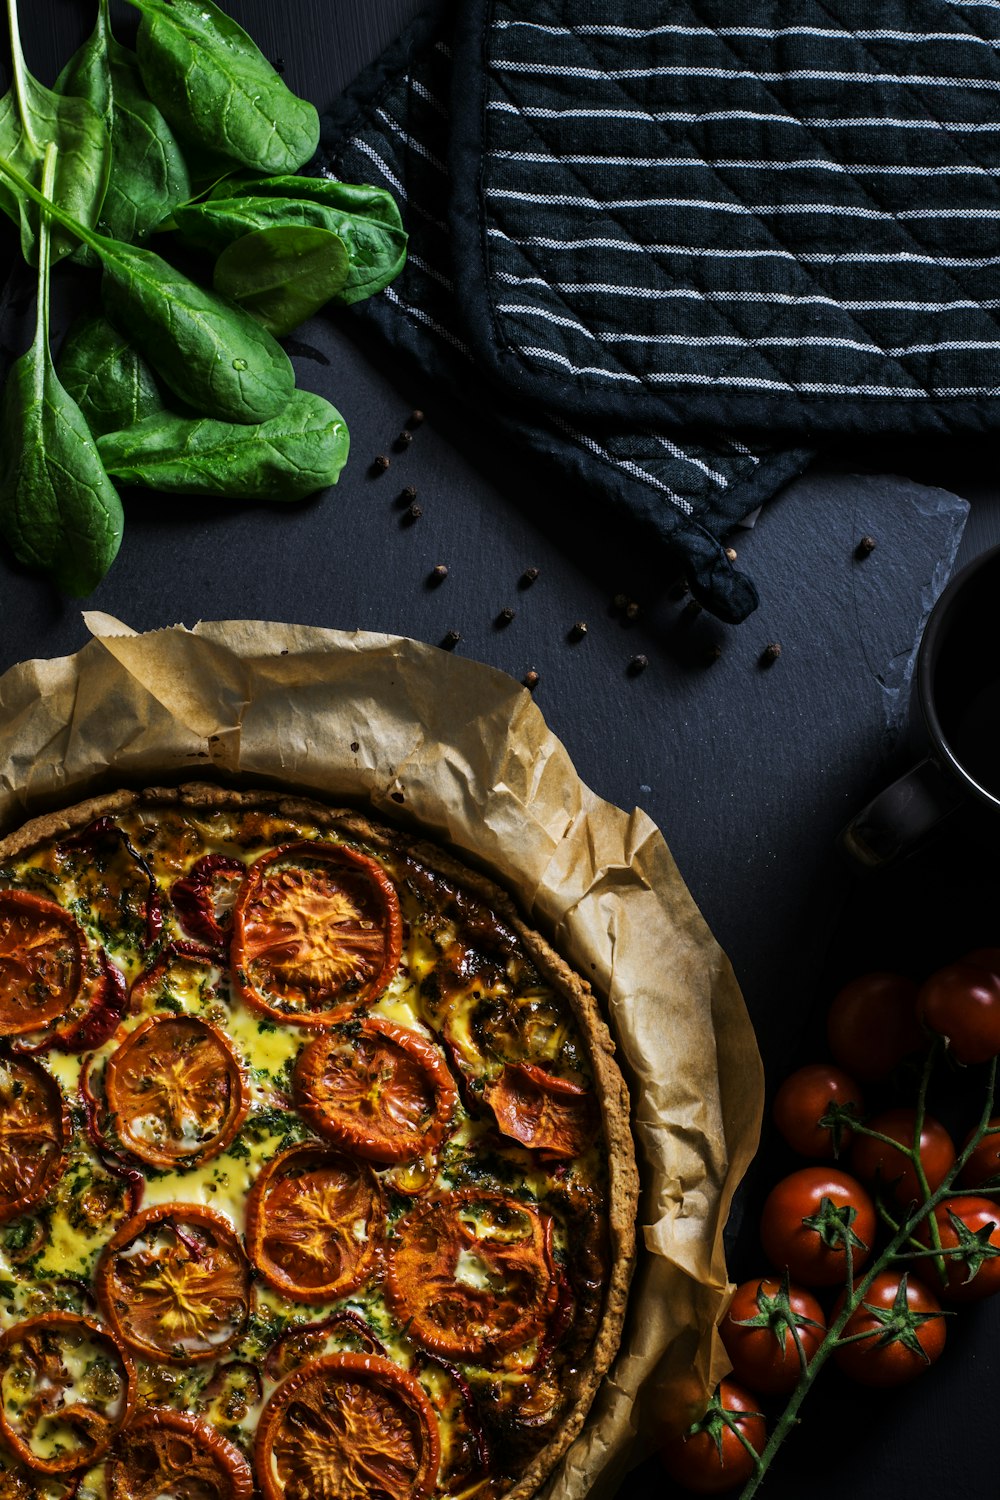 Fotografía plana de dos agarraderas negras junto a tomates y pizza